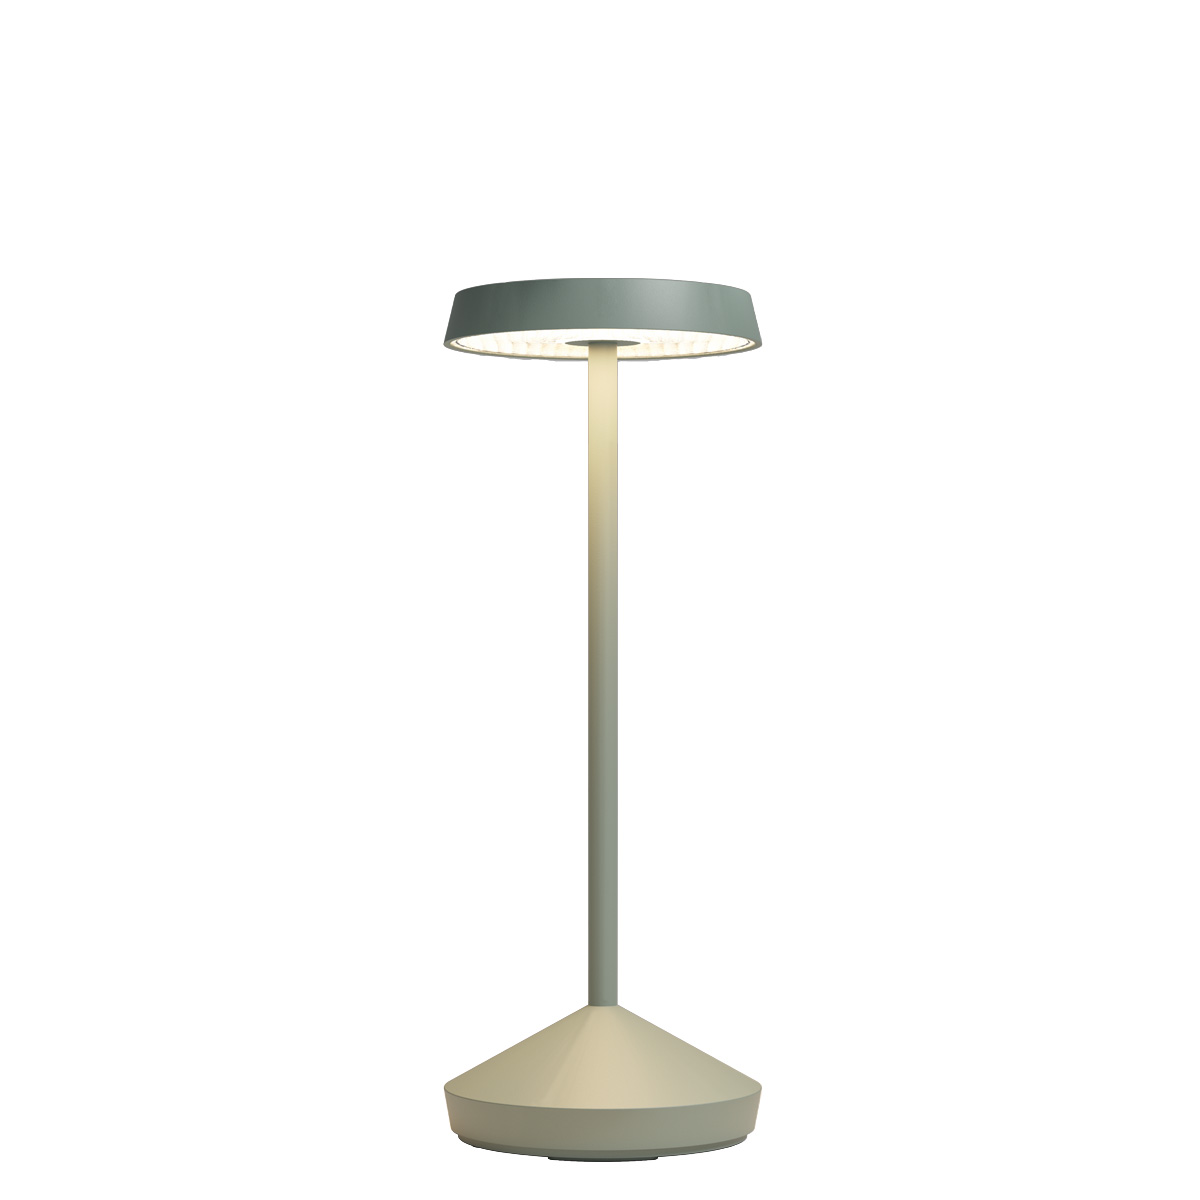 REDO GROUP lampe pour miroir ERMES 120 cm (3000K - Métal et polycarbonate  satiné) - Amoble Design